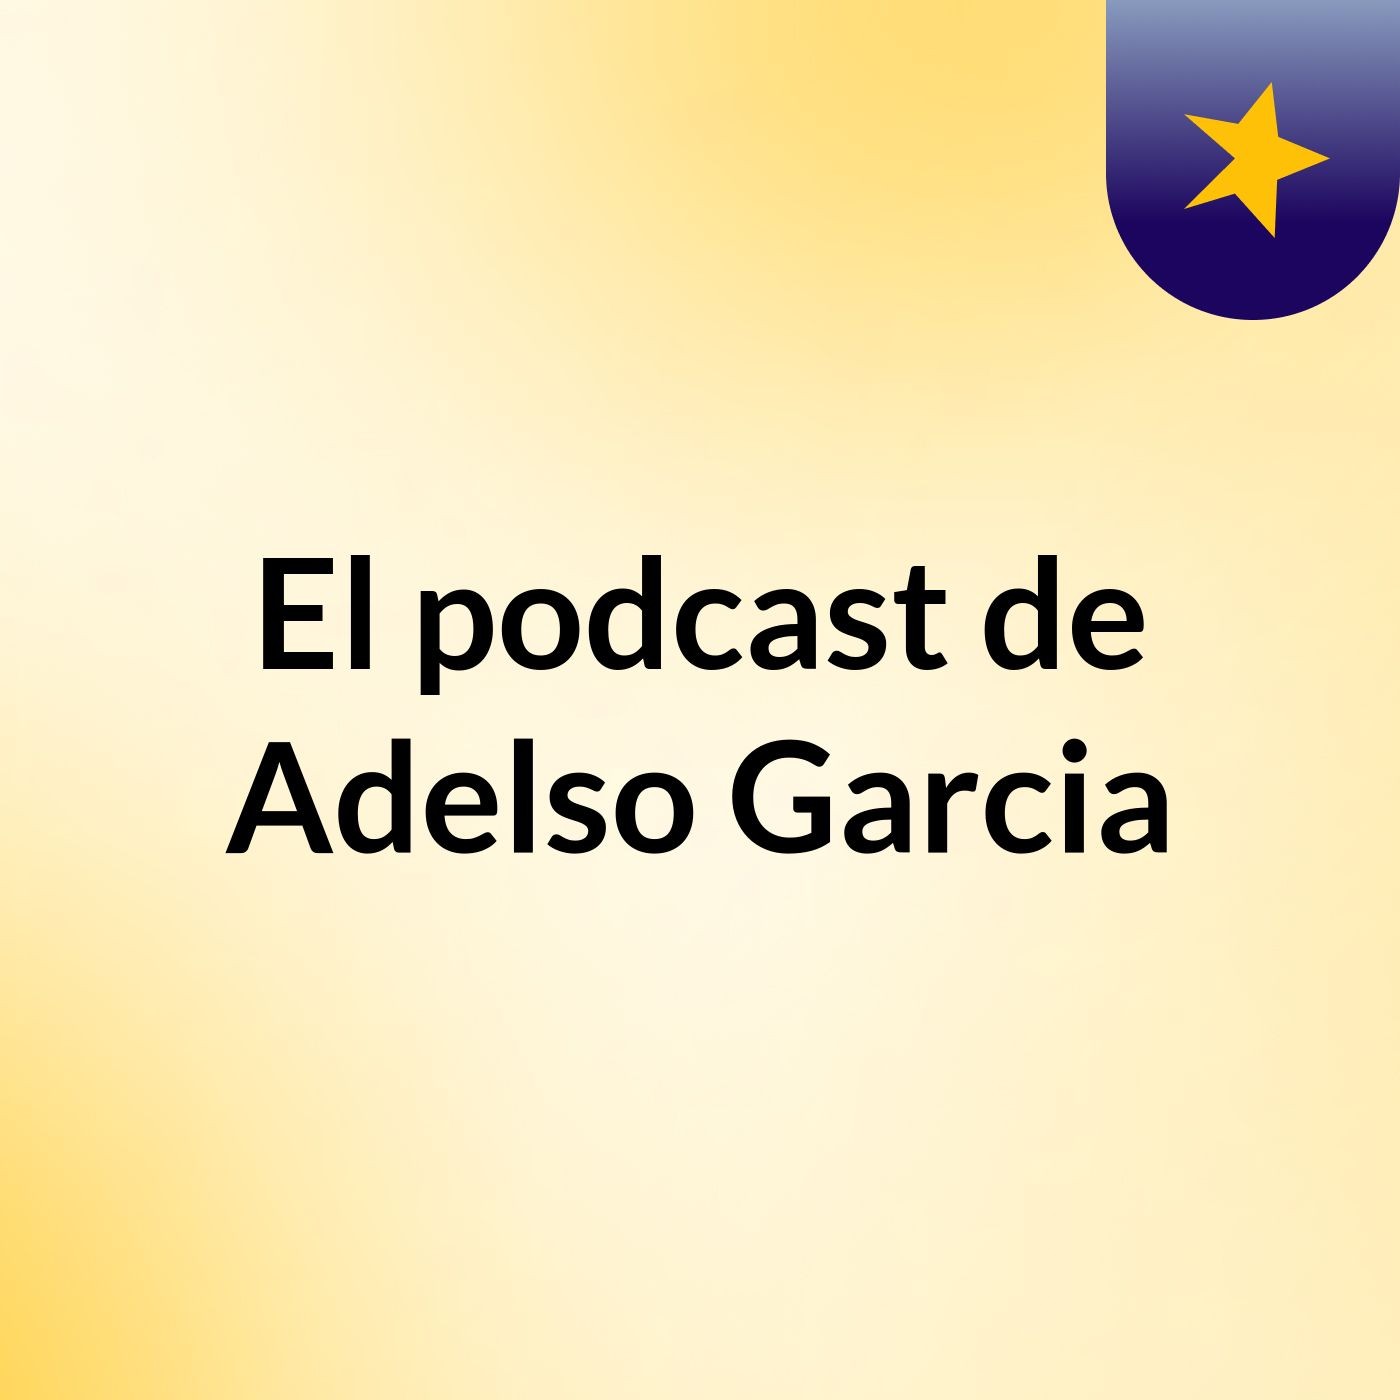 El podcast de Adelso Garcia